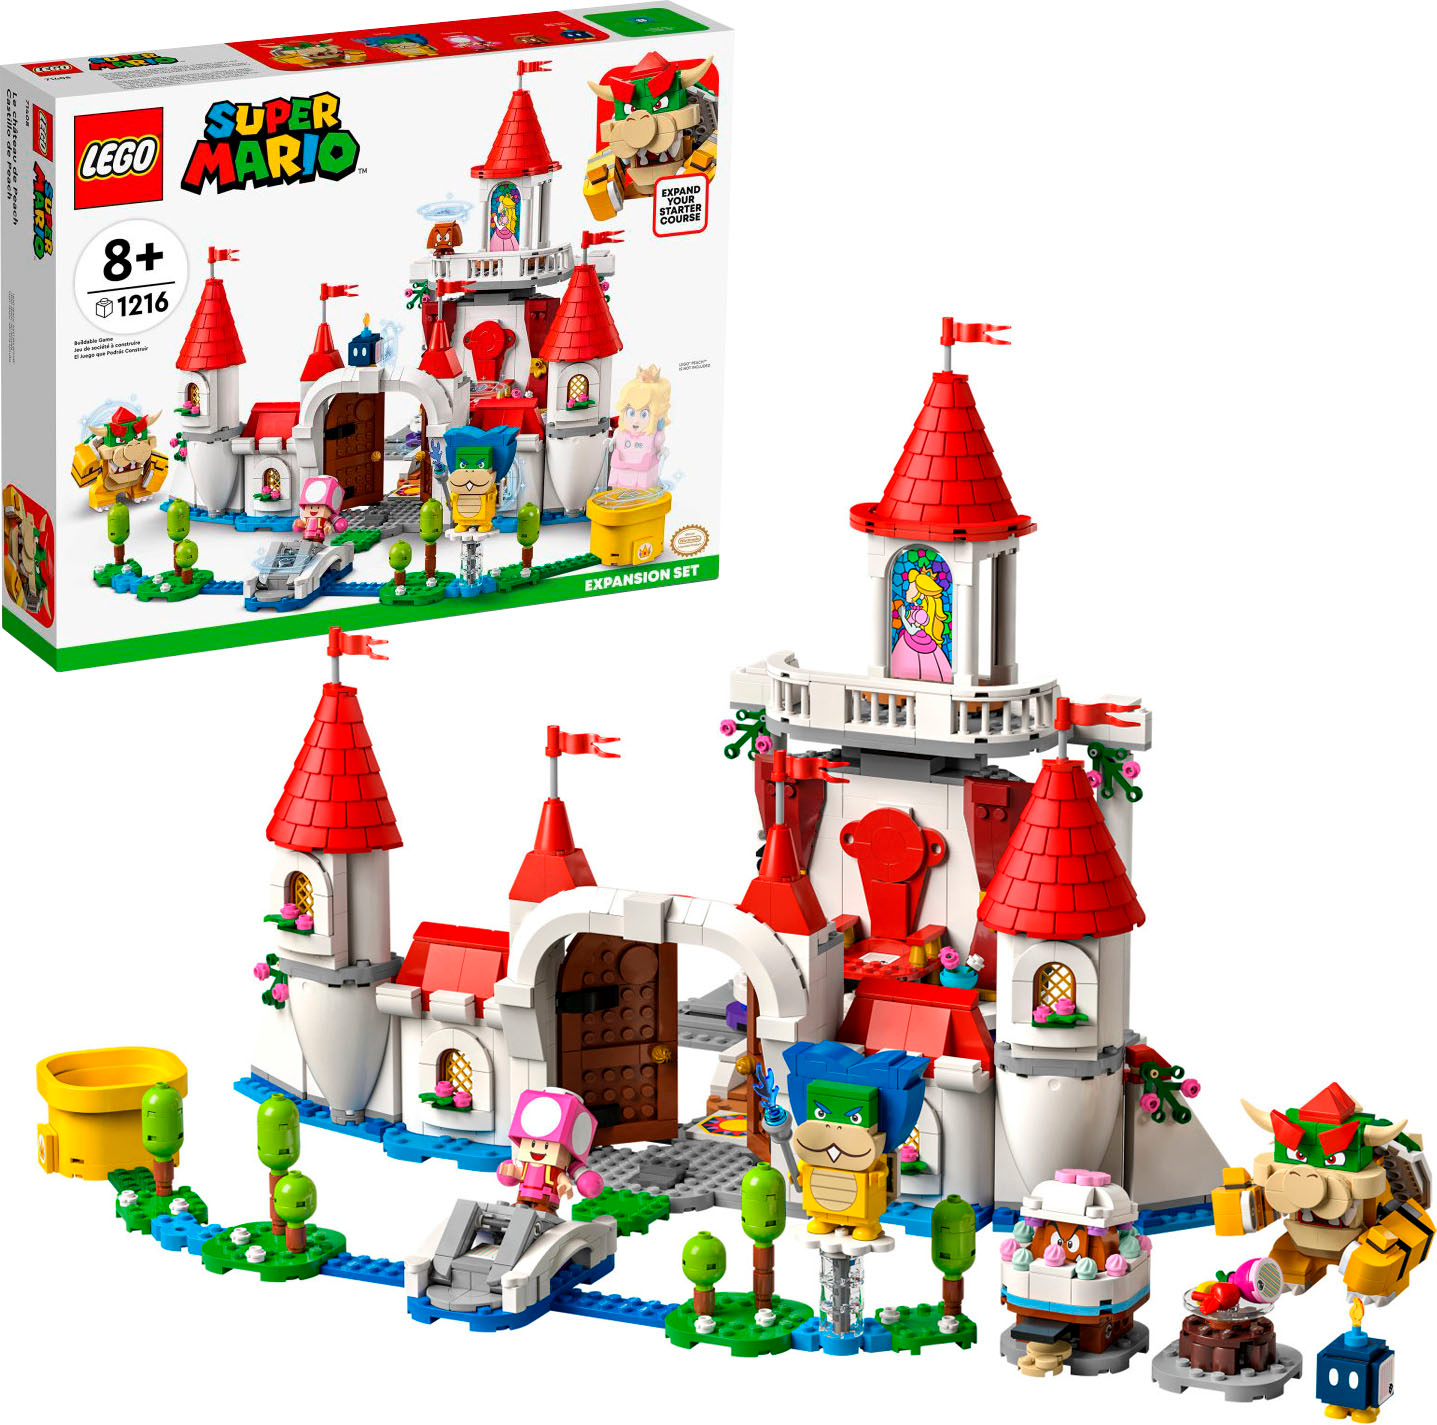 Lego Super Mario Peach's Castle Expansion Set